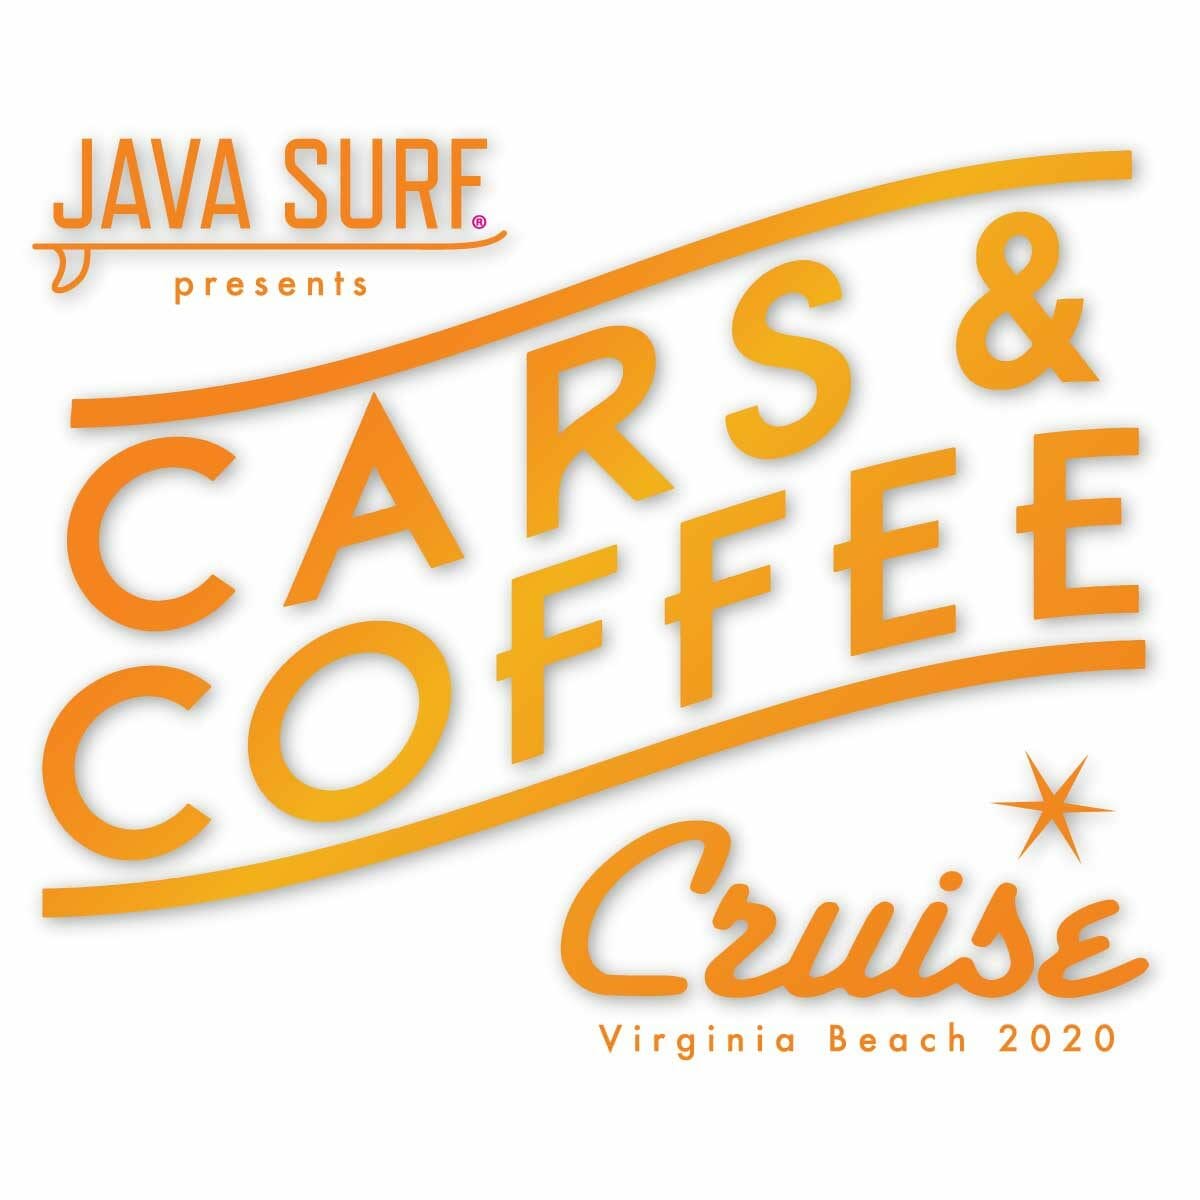 cars coffee cruise virginia beach 2020